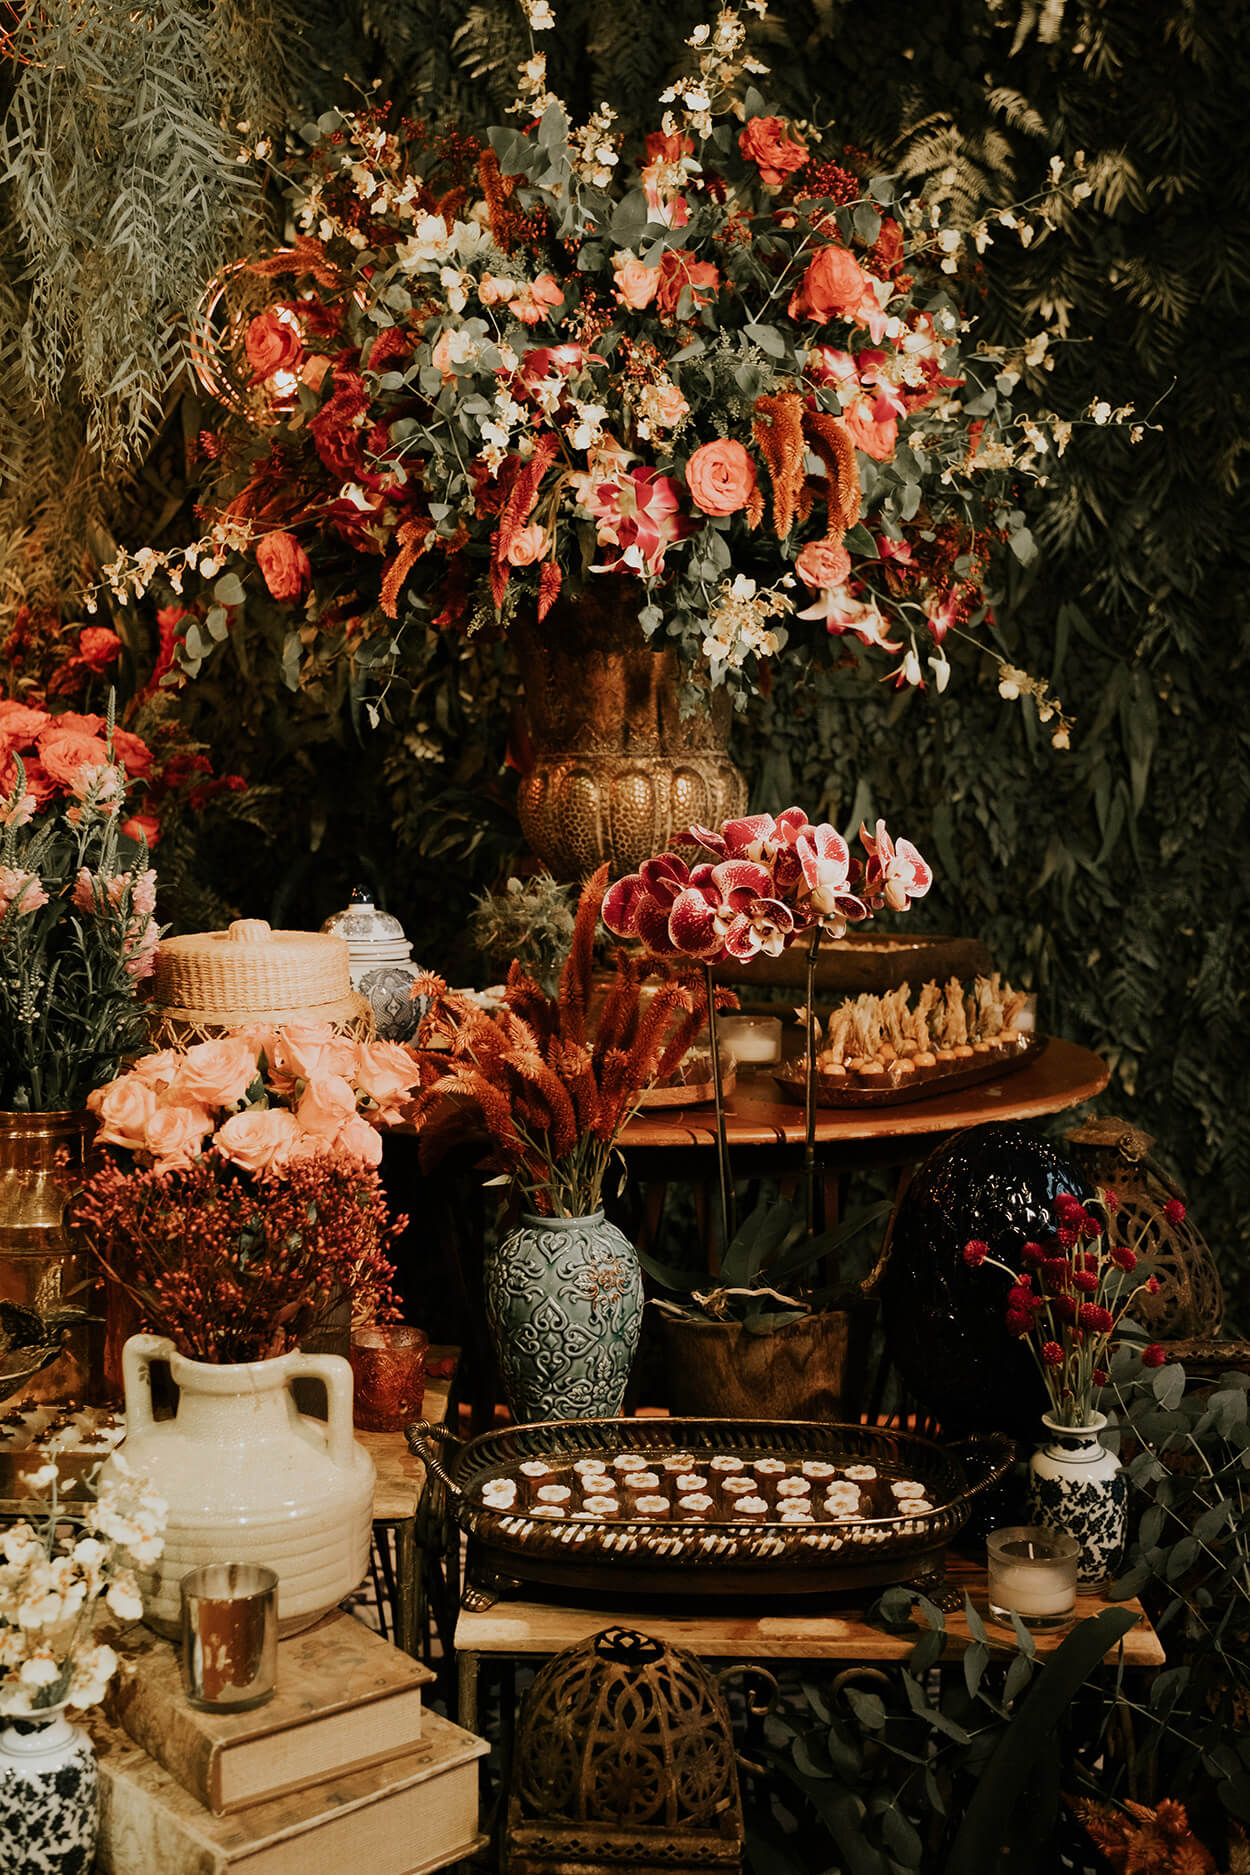 Mesa redondad de madeira com vasos de flroes e bandejas com doces